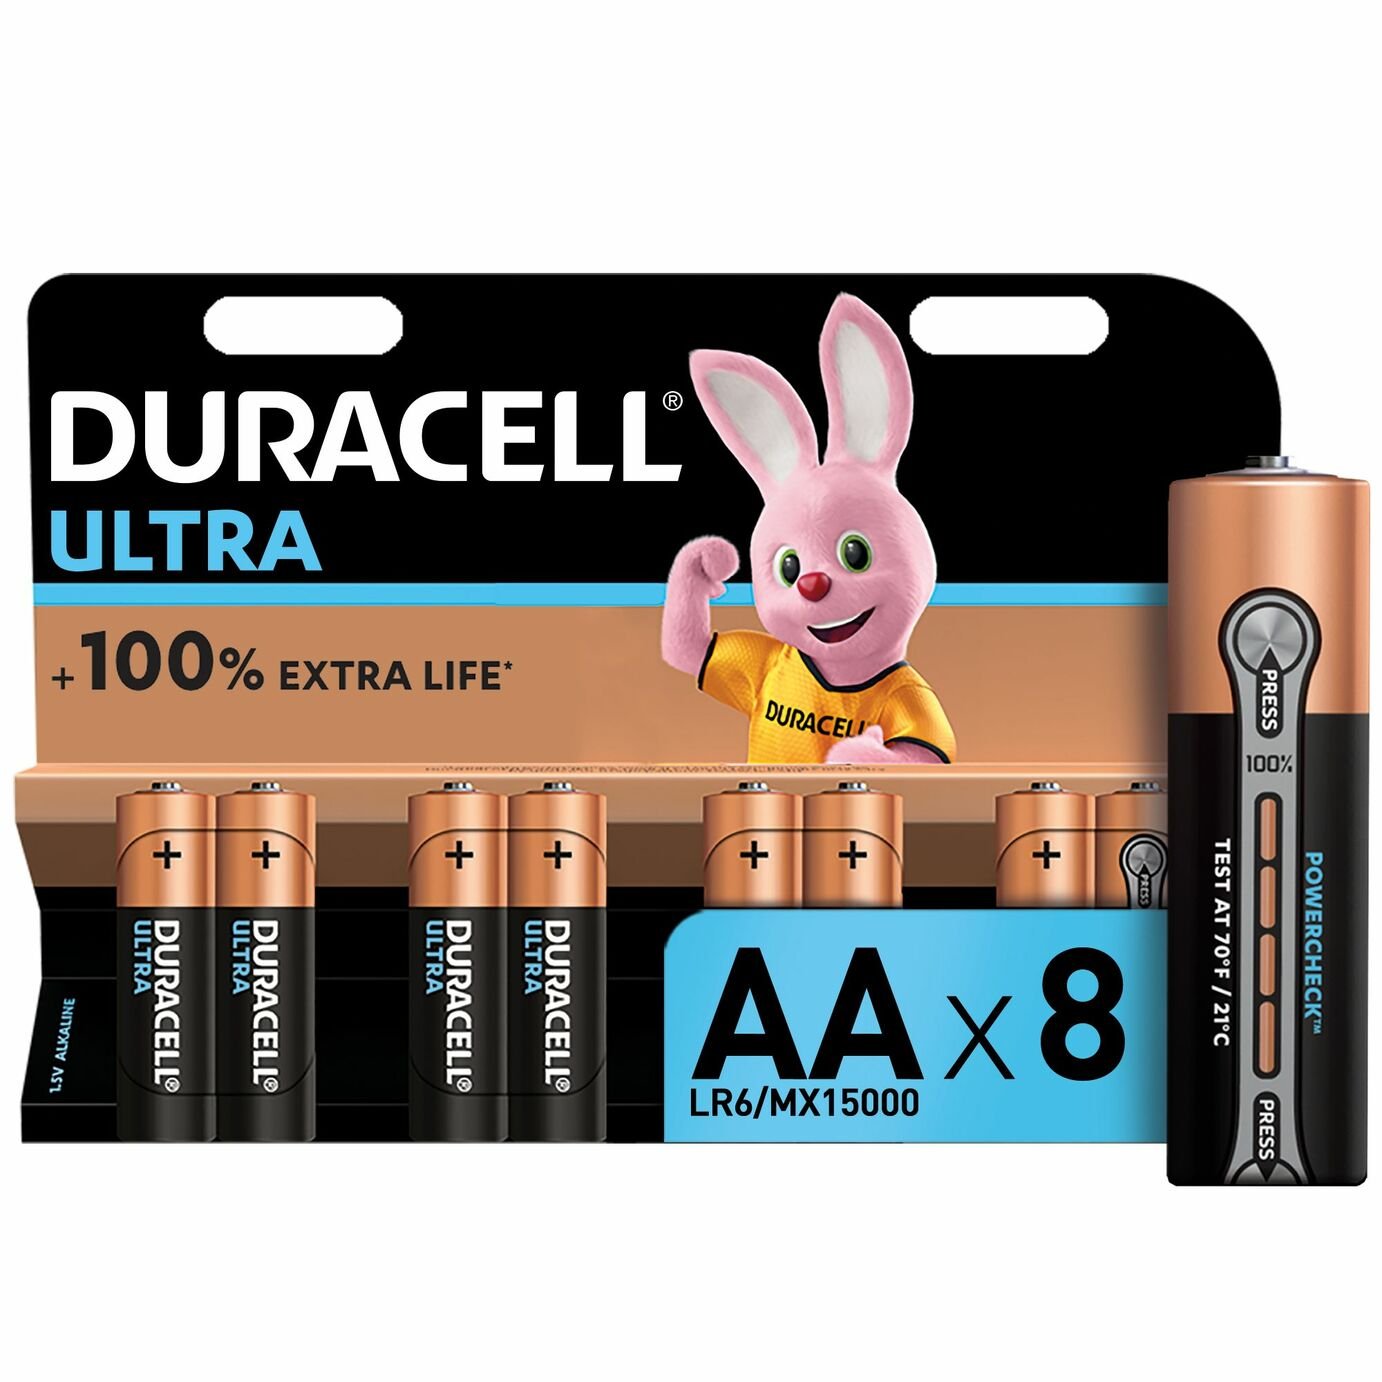 Duracell Ultra Power Alkaline AA Batteries review